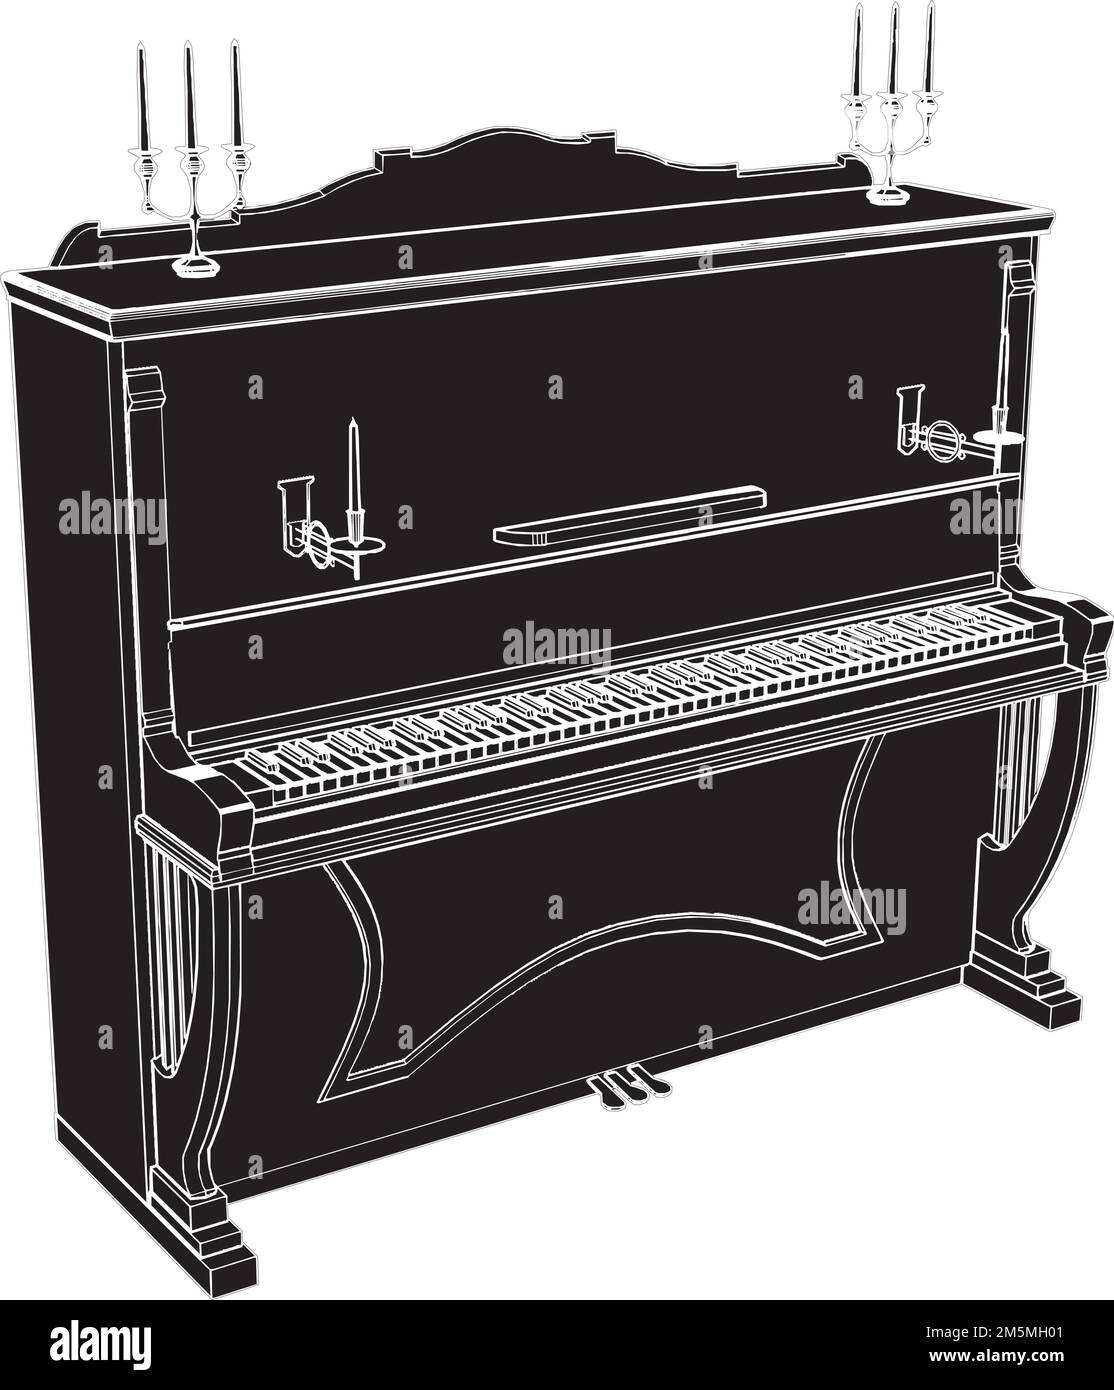 Vecteur piano. Illustration sur fond blanc. Illustration vectorielle d'un piano. Illustration de Vecteur